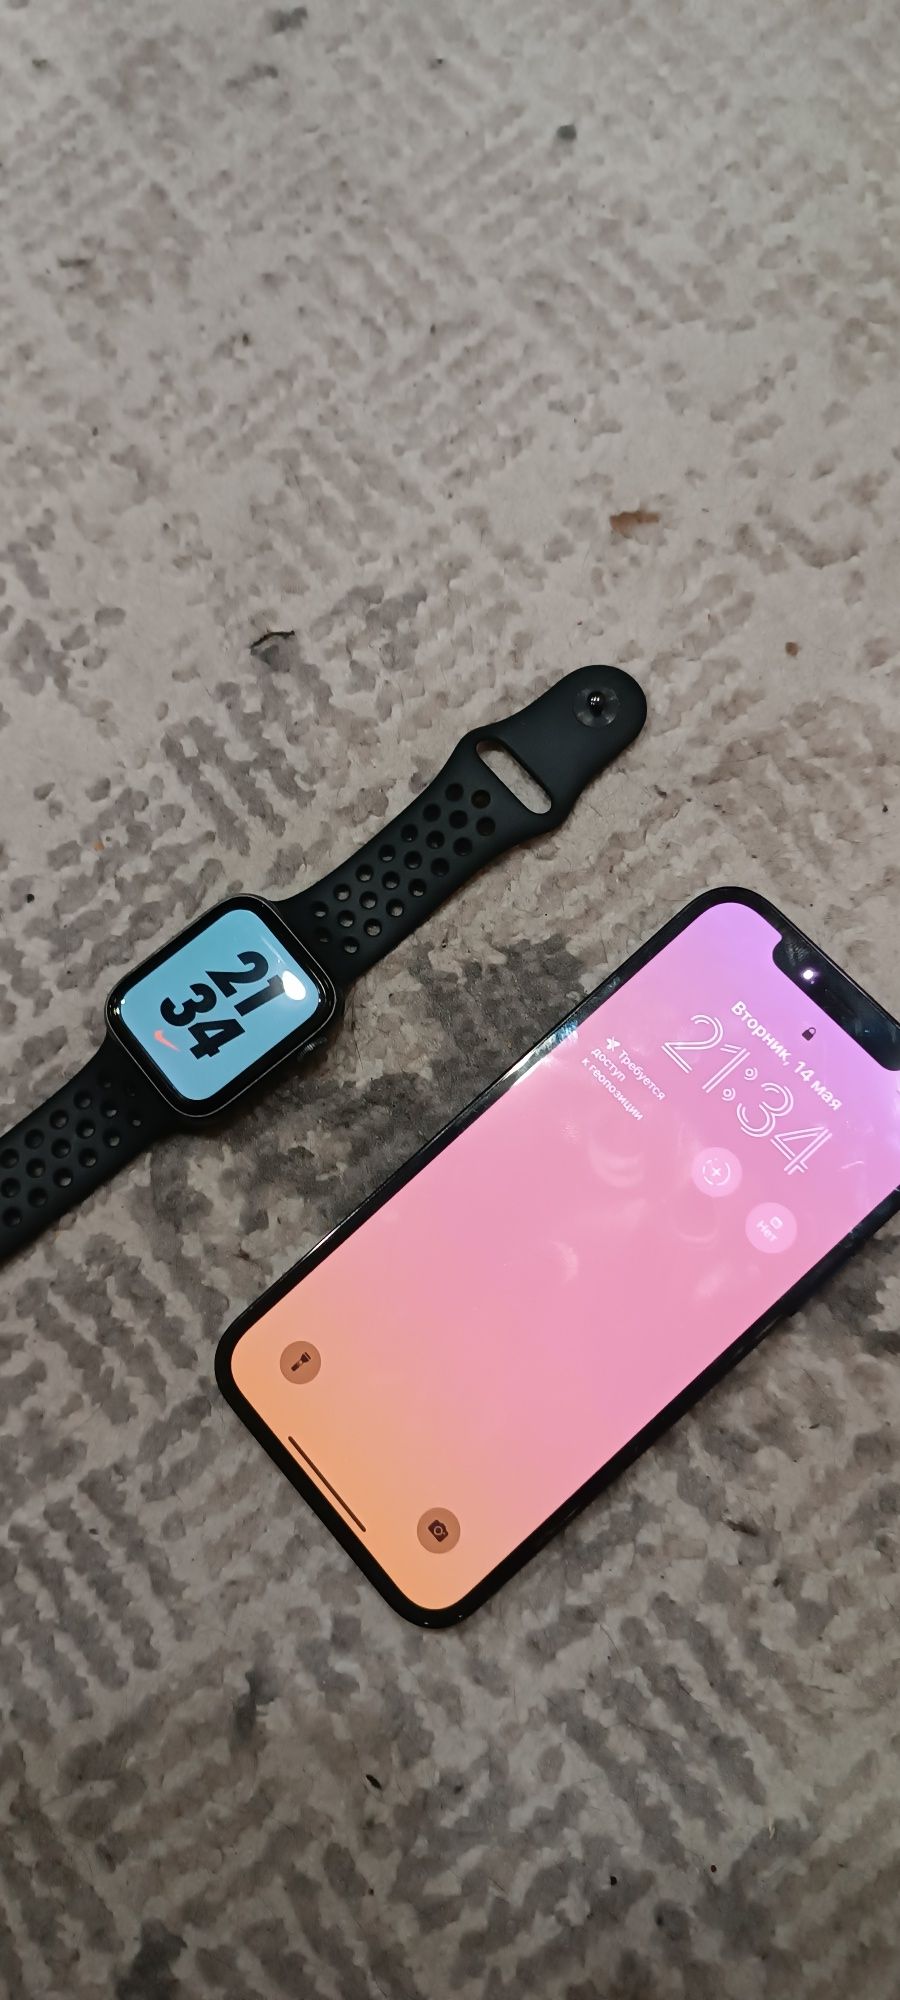 Айфон + эпл вотч iPhone + Apple Watch